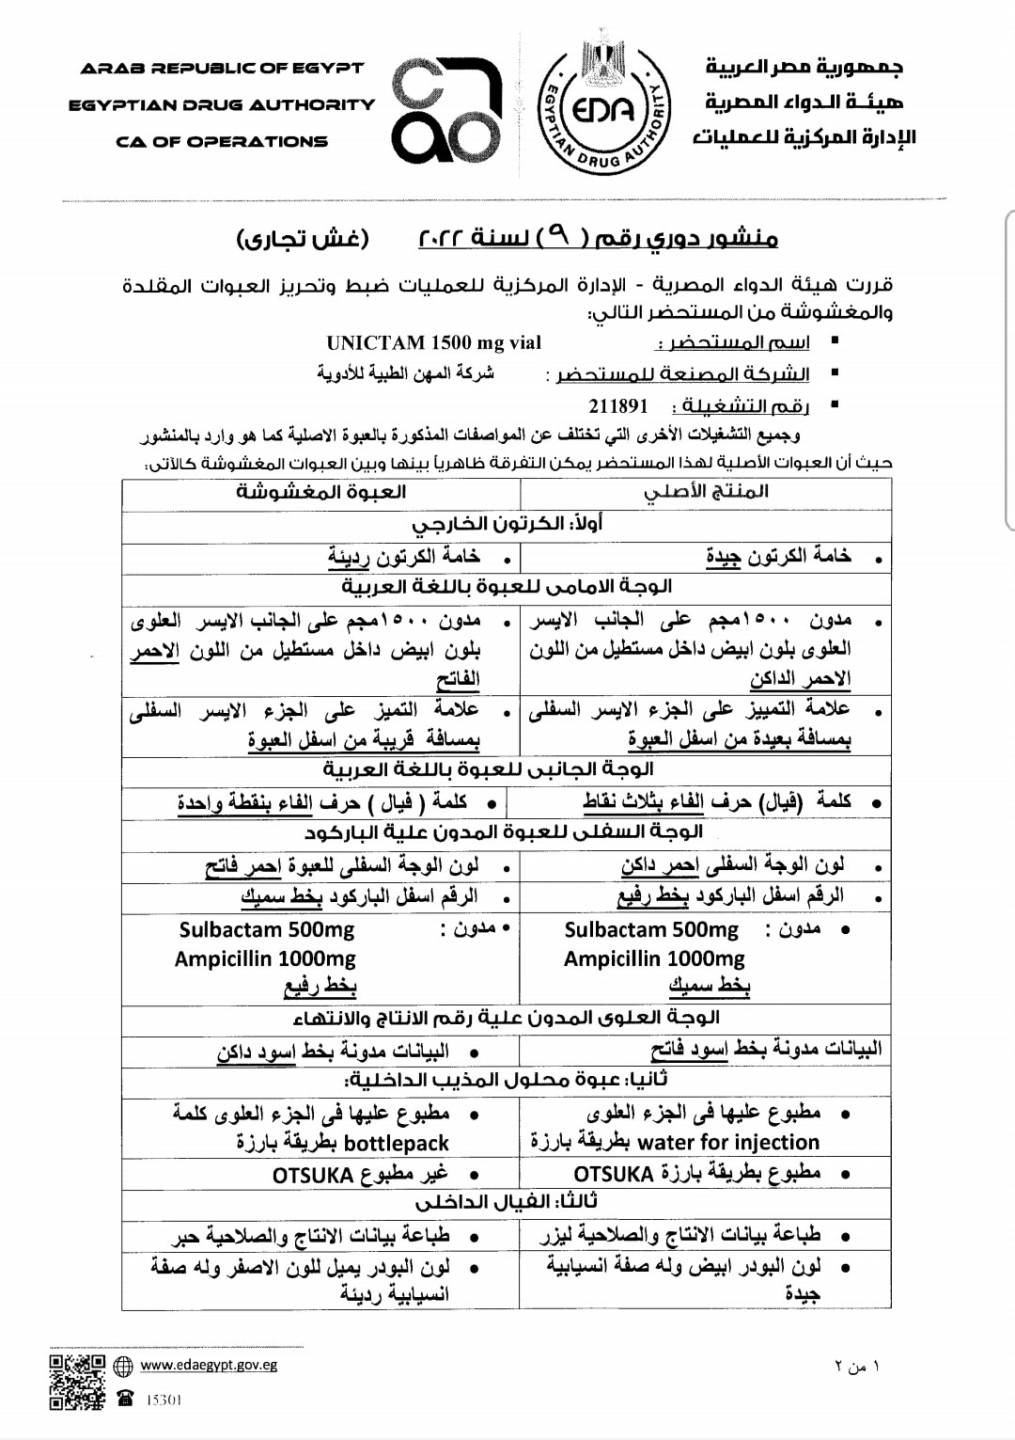 بيان هيئة الدواء المصرية حول يونيكتام 1500